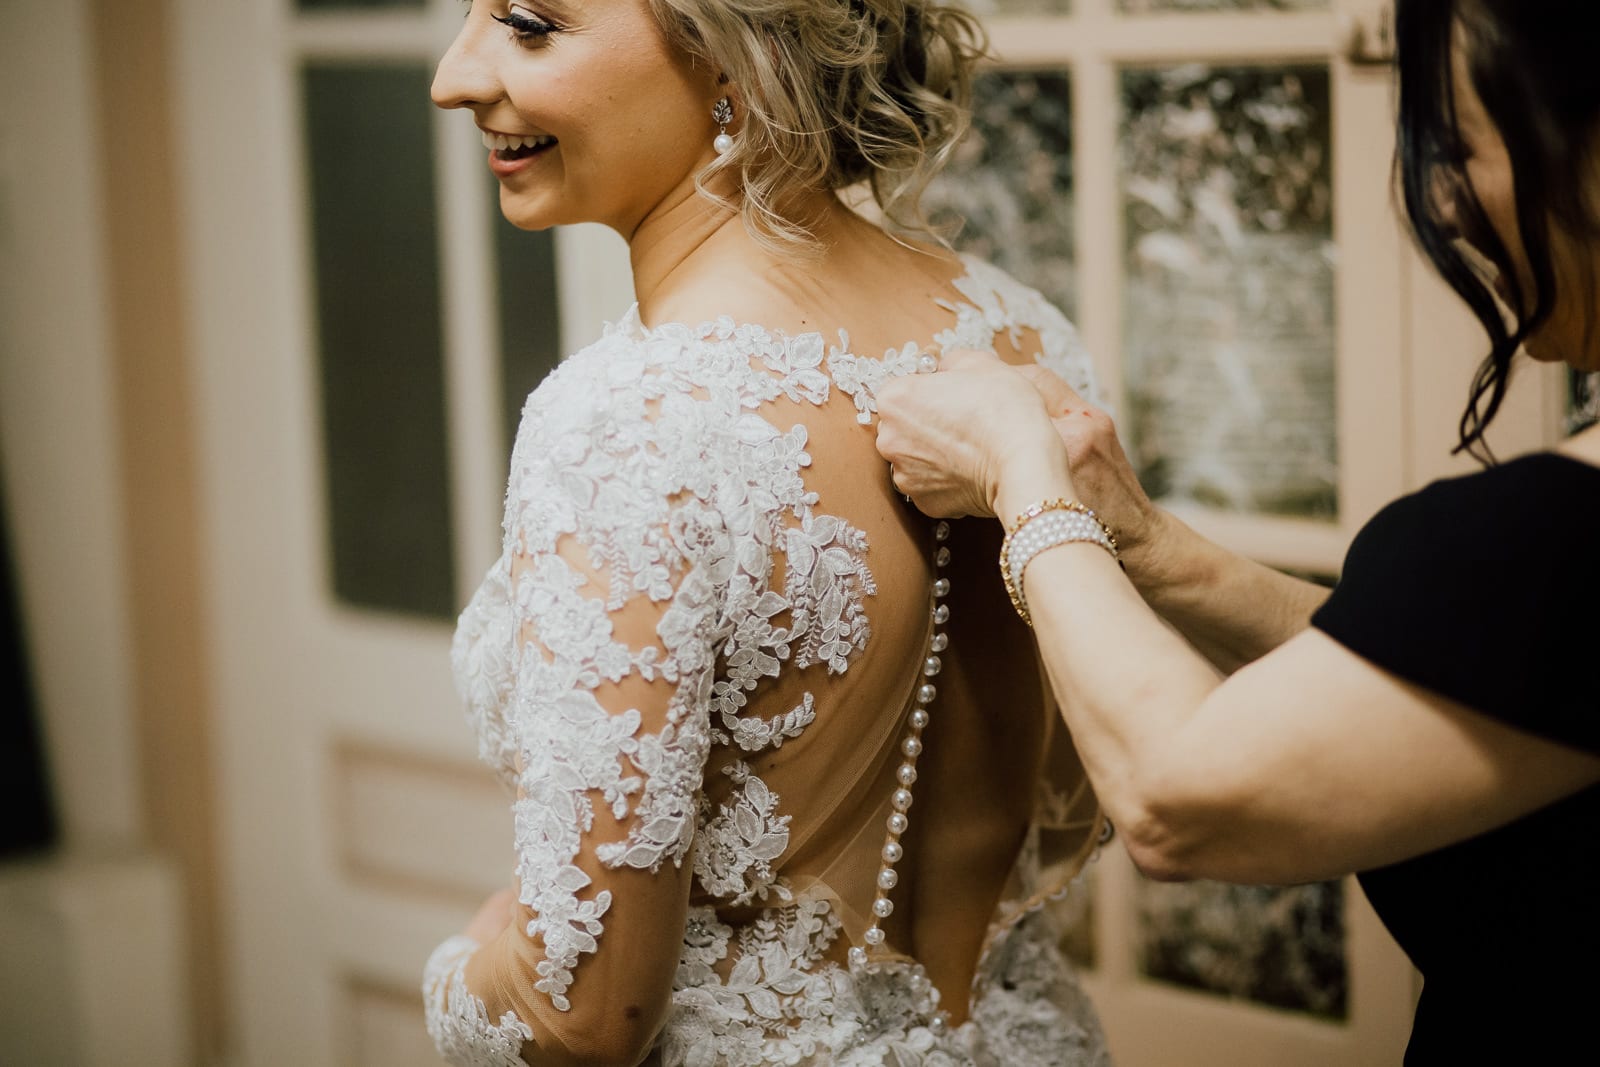 Bride's mother buttons wedding dress